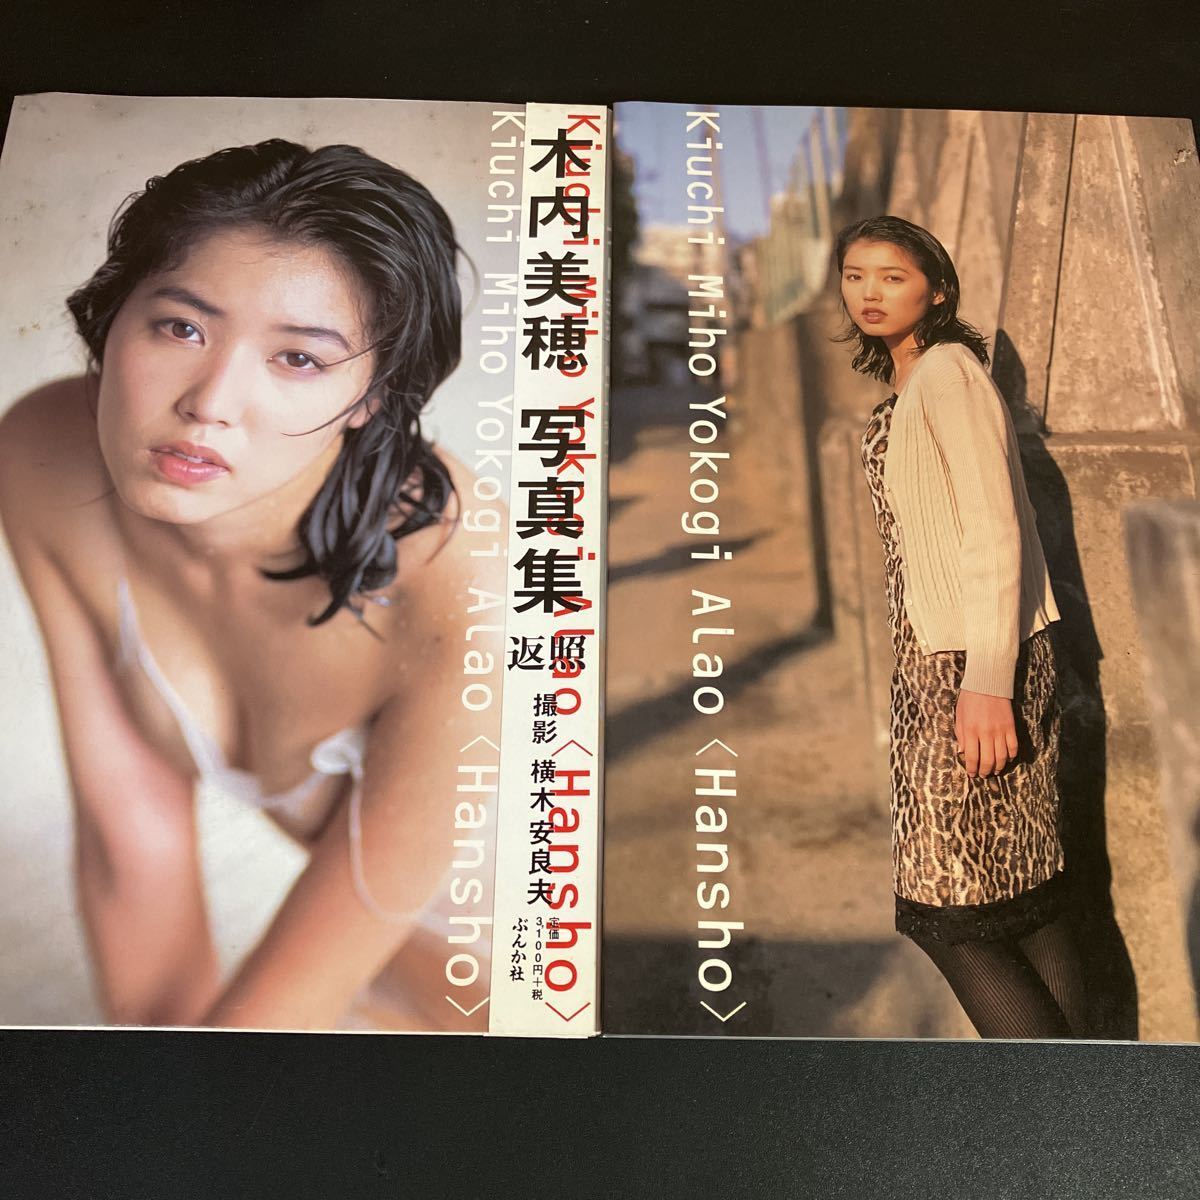 23-9-26[ Kiuchi Miho photoalbum return .] Ran Jerry hand bla is mi. Bunkasha [ anonymity delivery ]